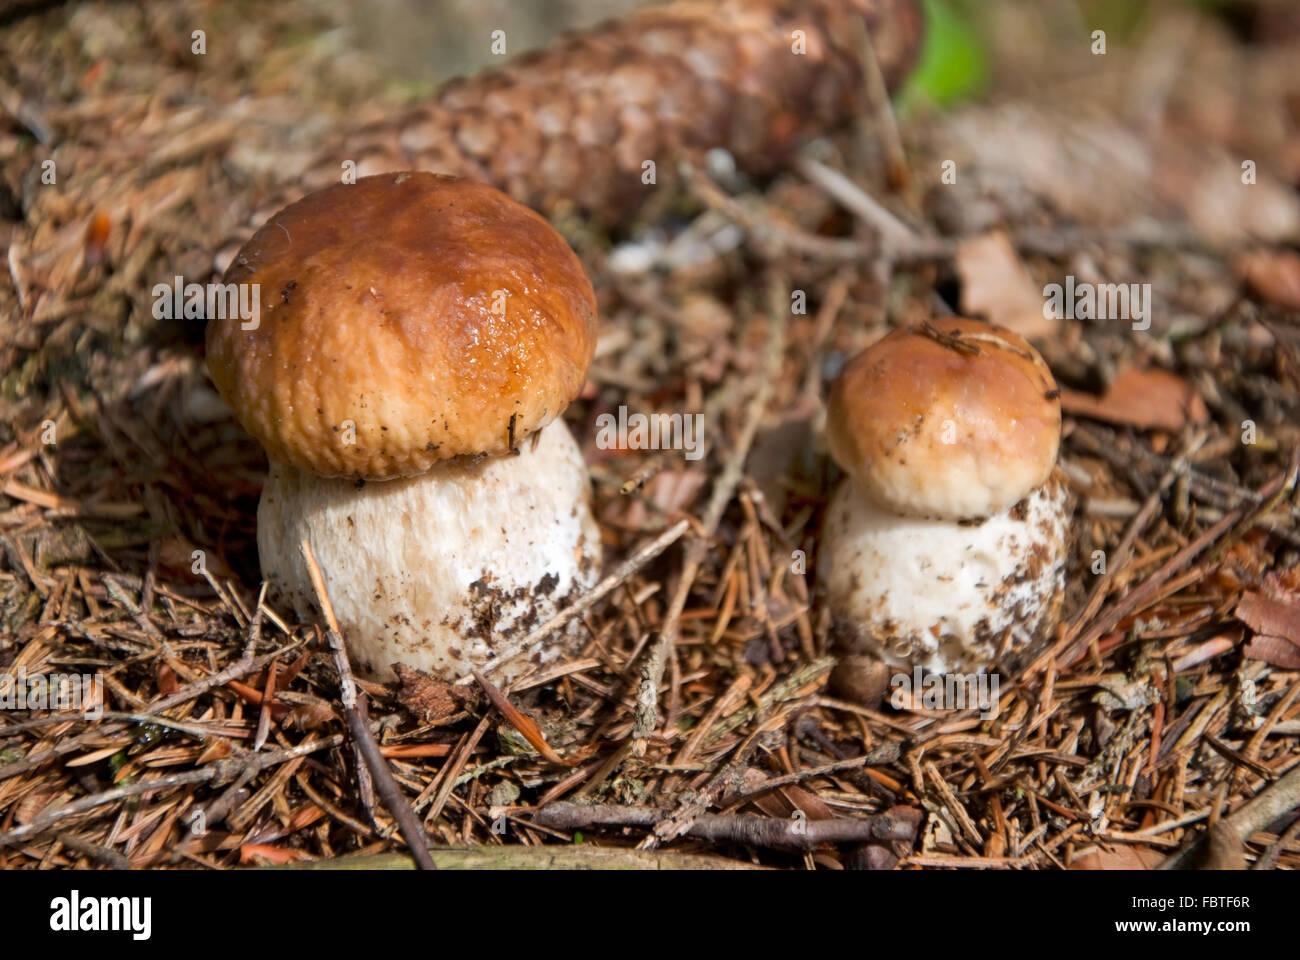 Funghi porcini Boletus edulis Foto Stock